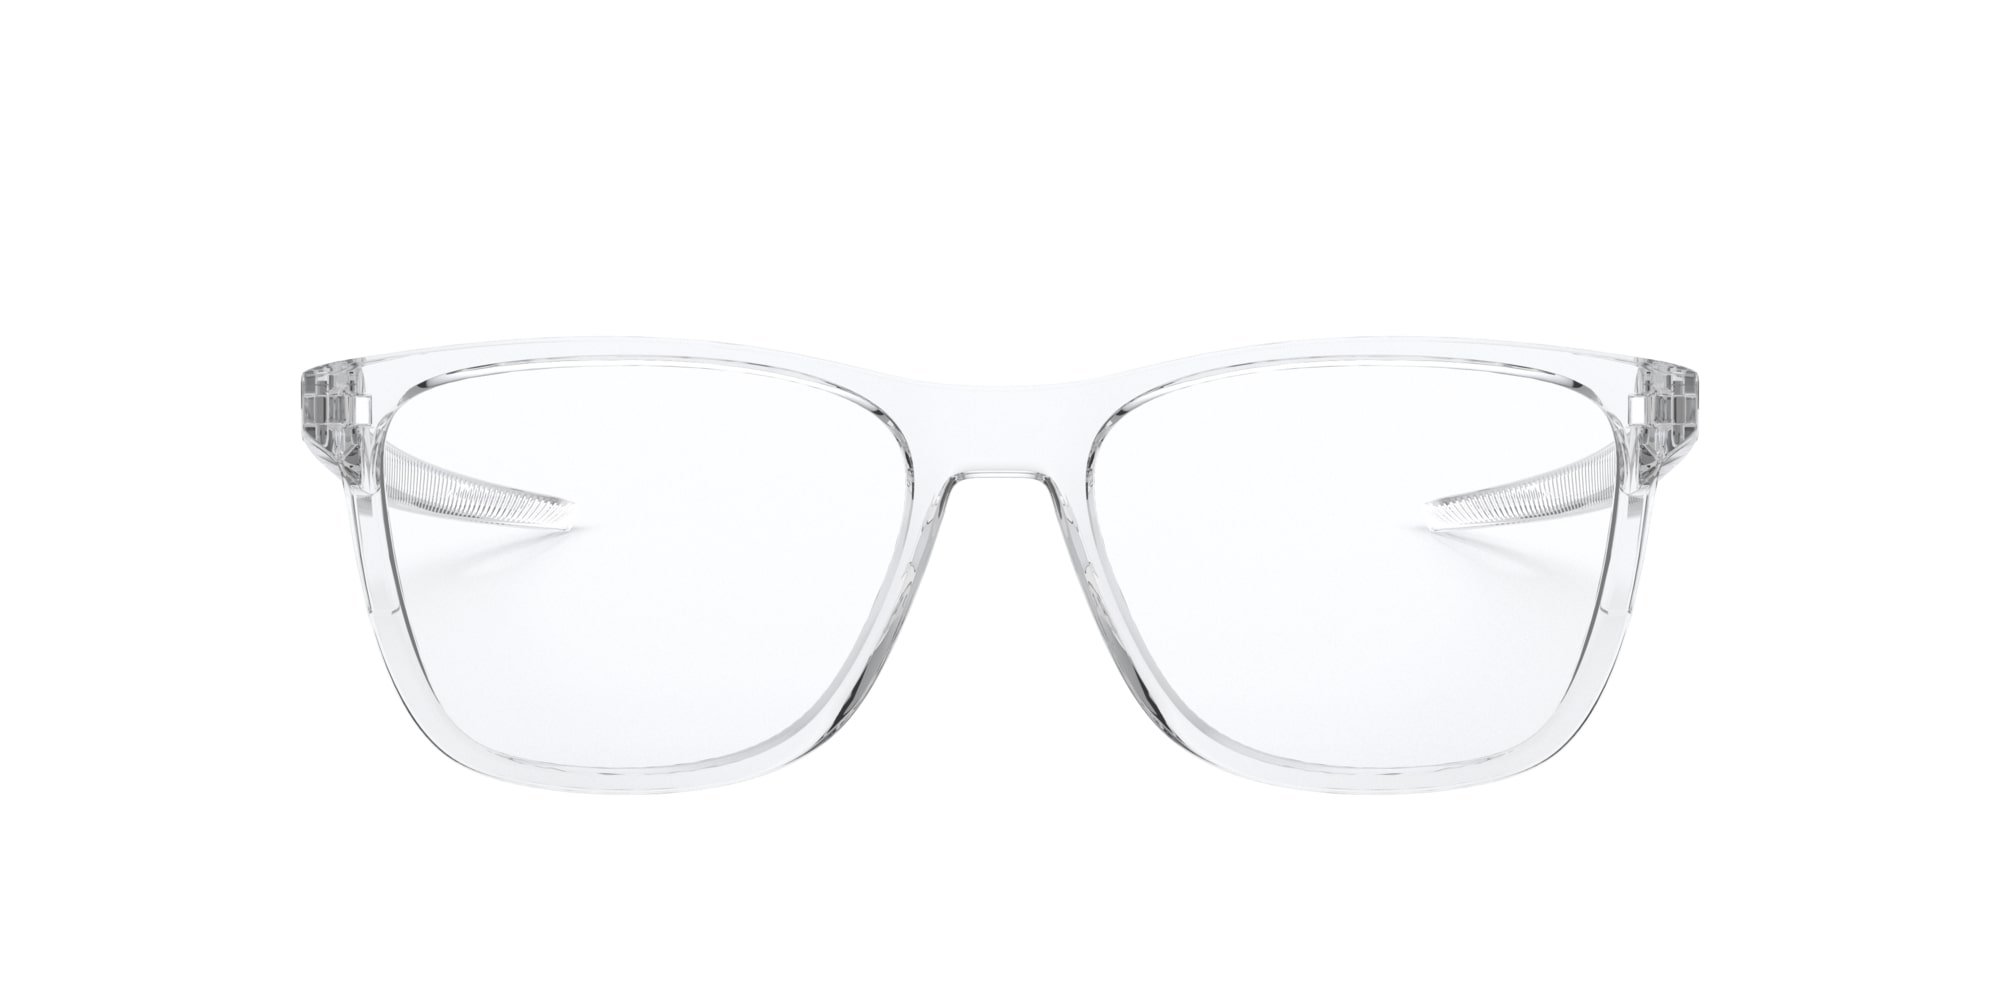 Das Bild zeigt die Korrektionsbrille OX8163 816303 von der Marke Oakley  in  transparent glänzend.